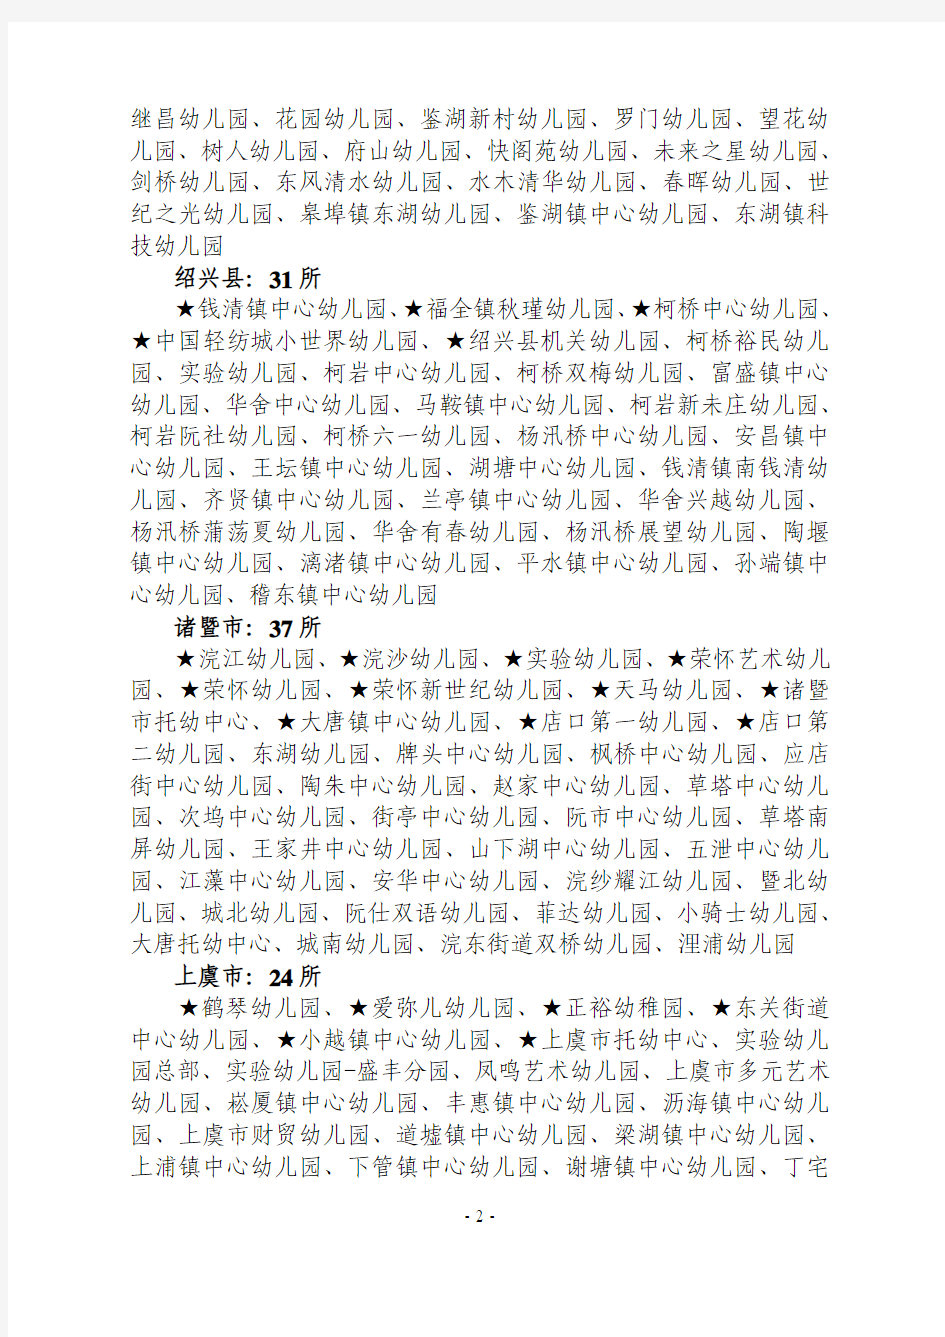 绍兴市教育局关于公布浙江省二级幼儿园名单的通知